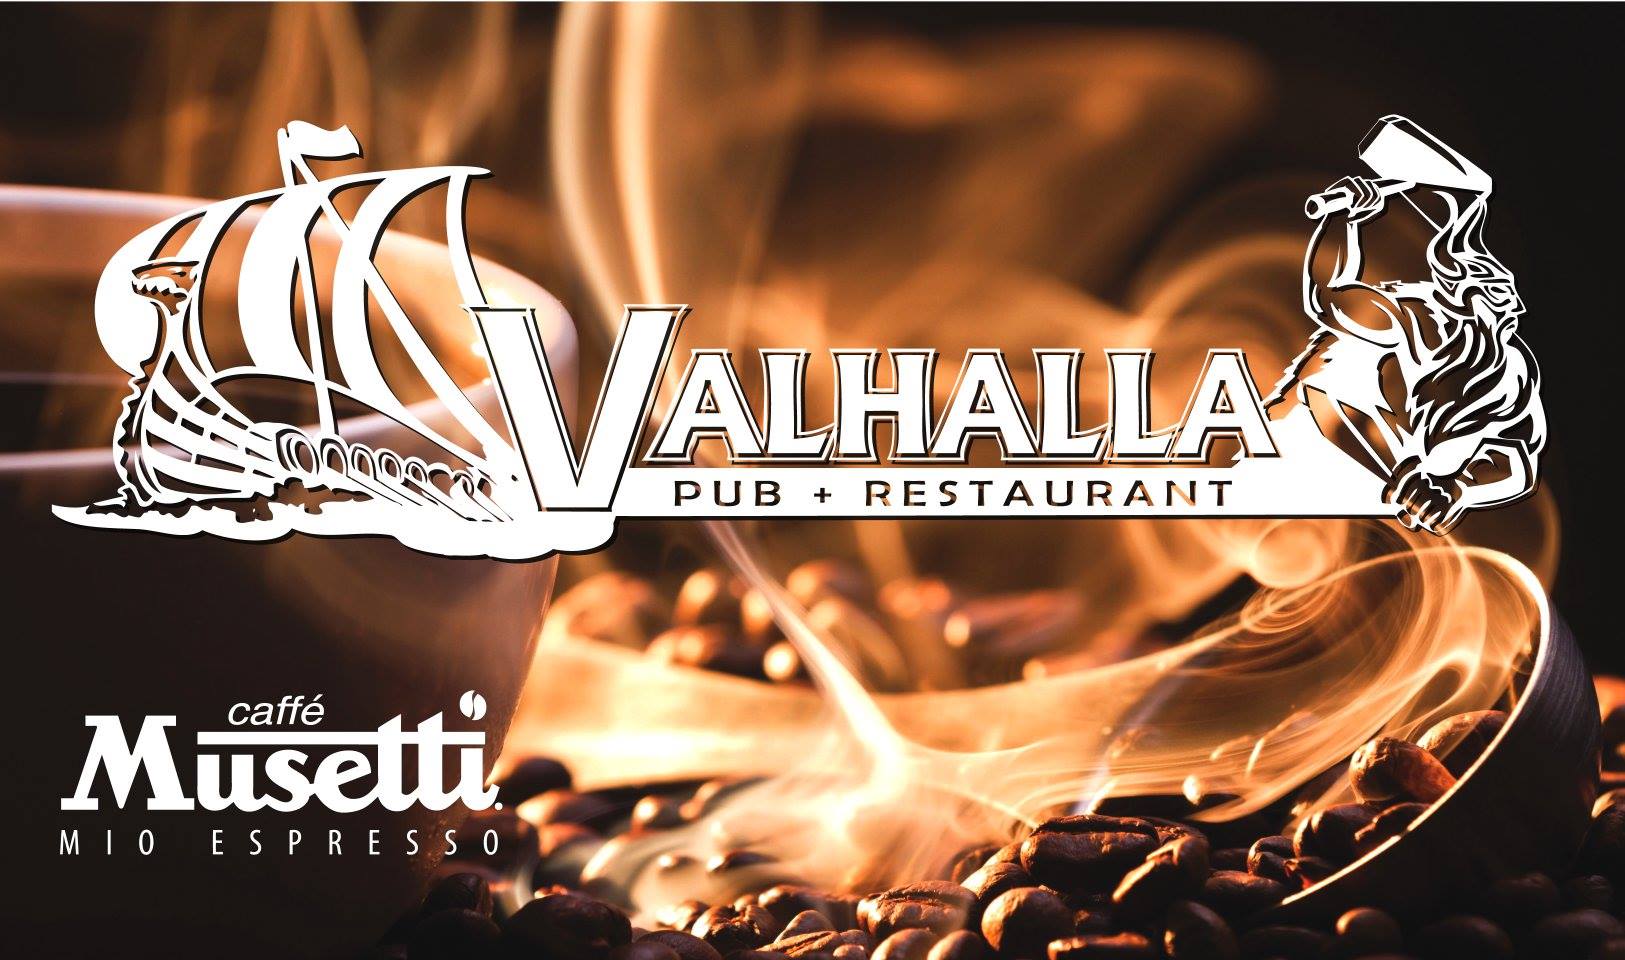 Valhalla pub & restaurant